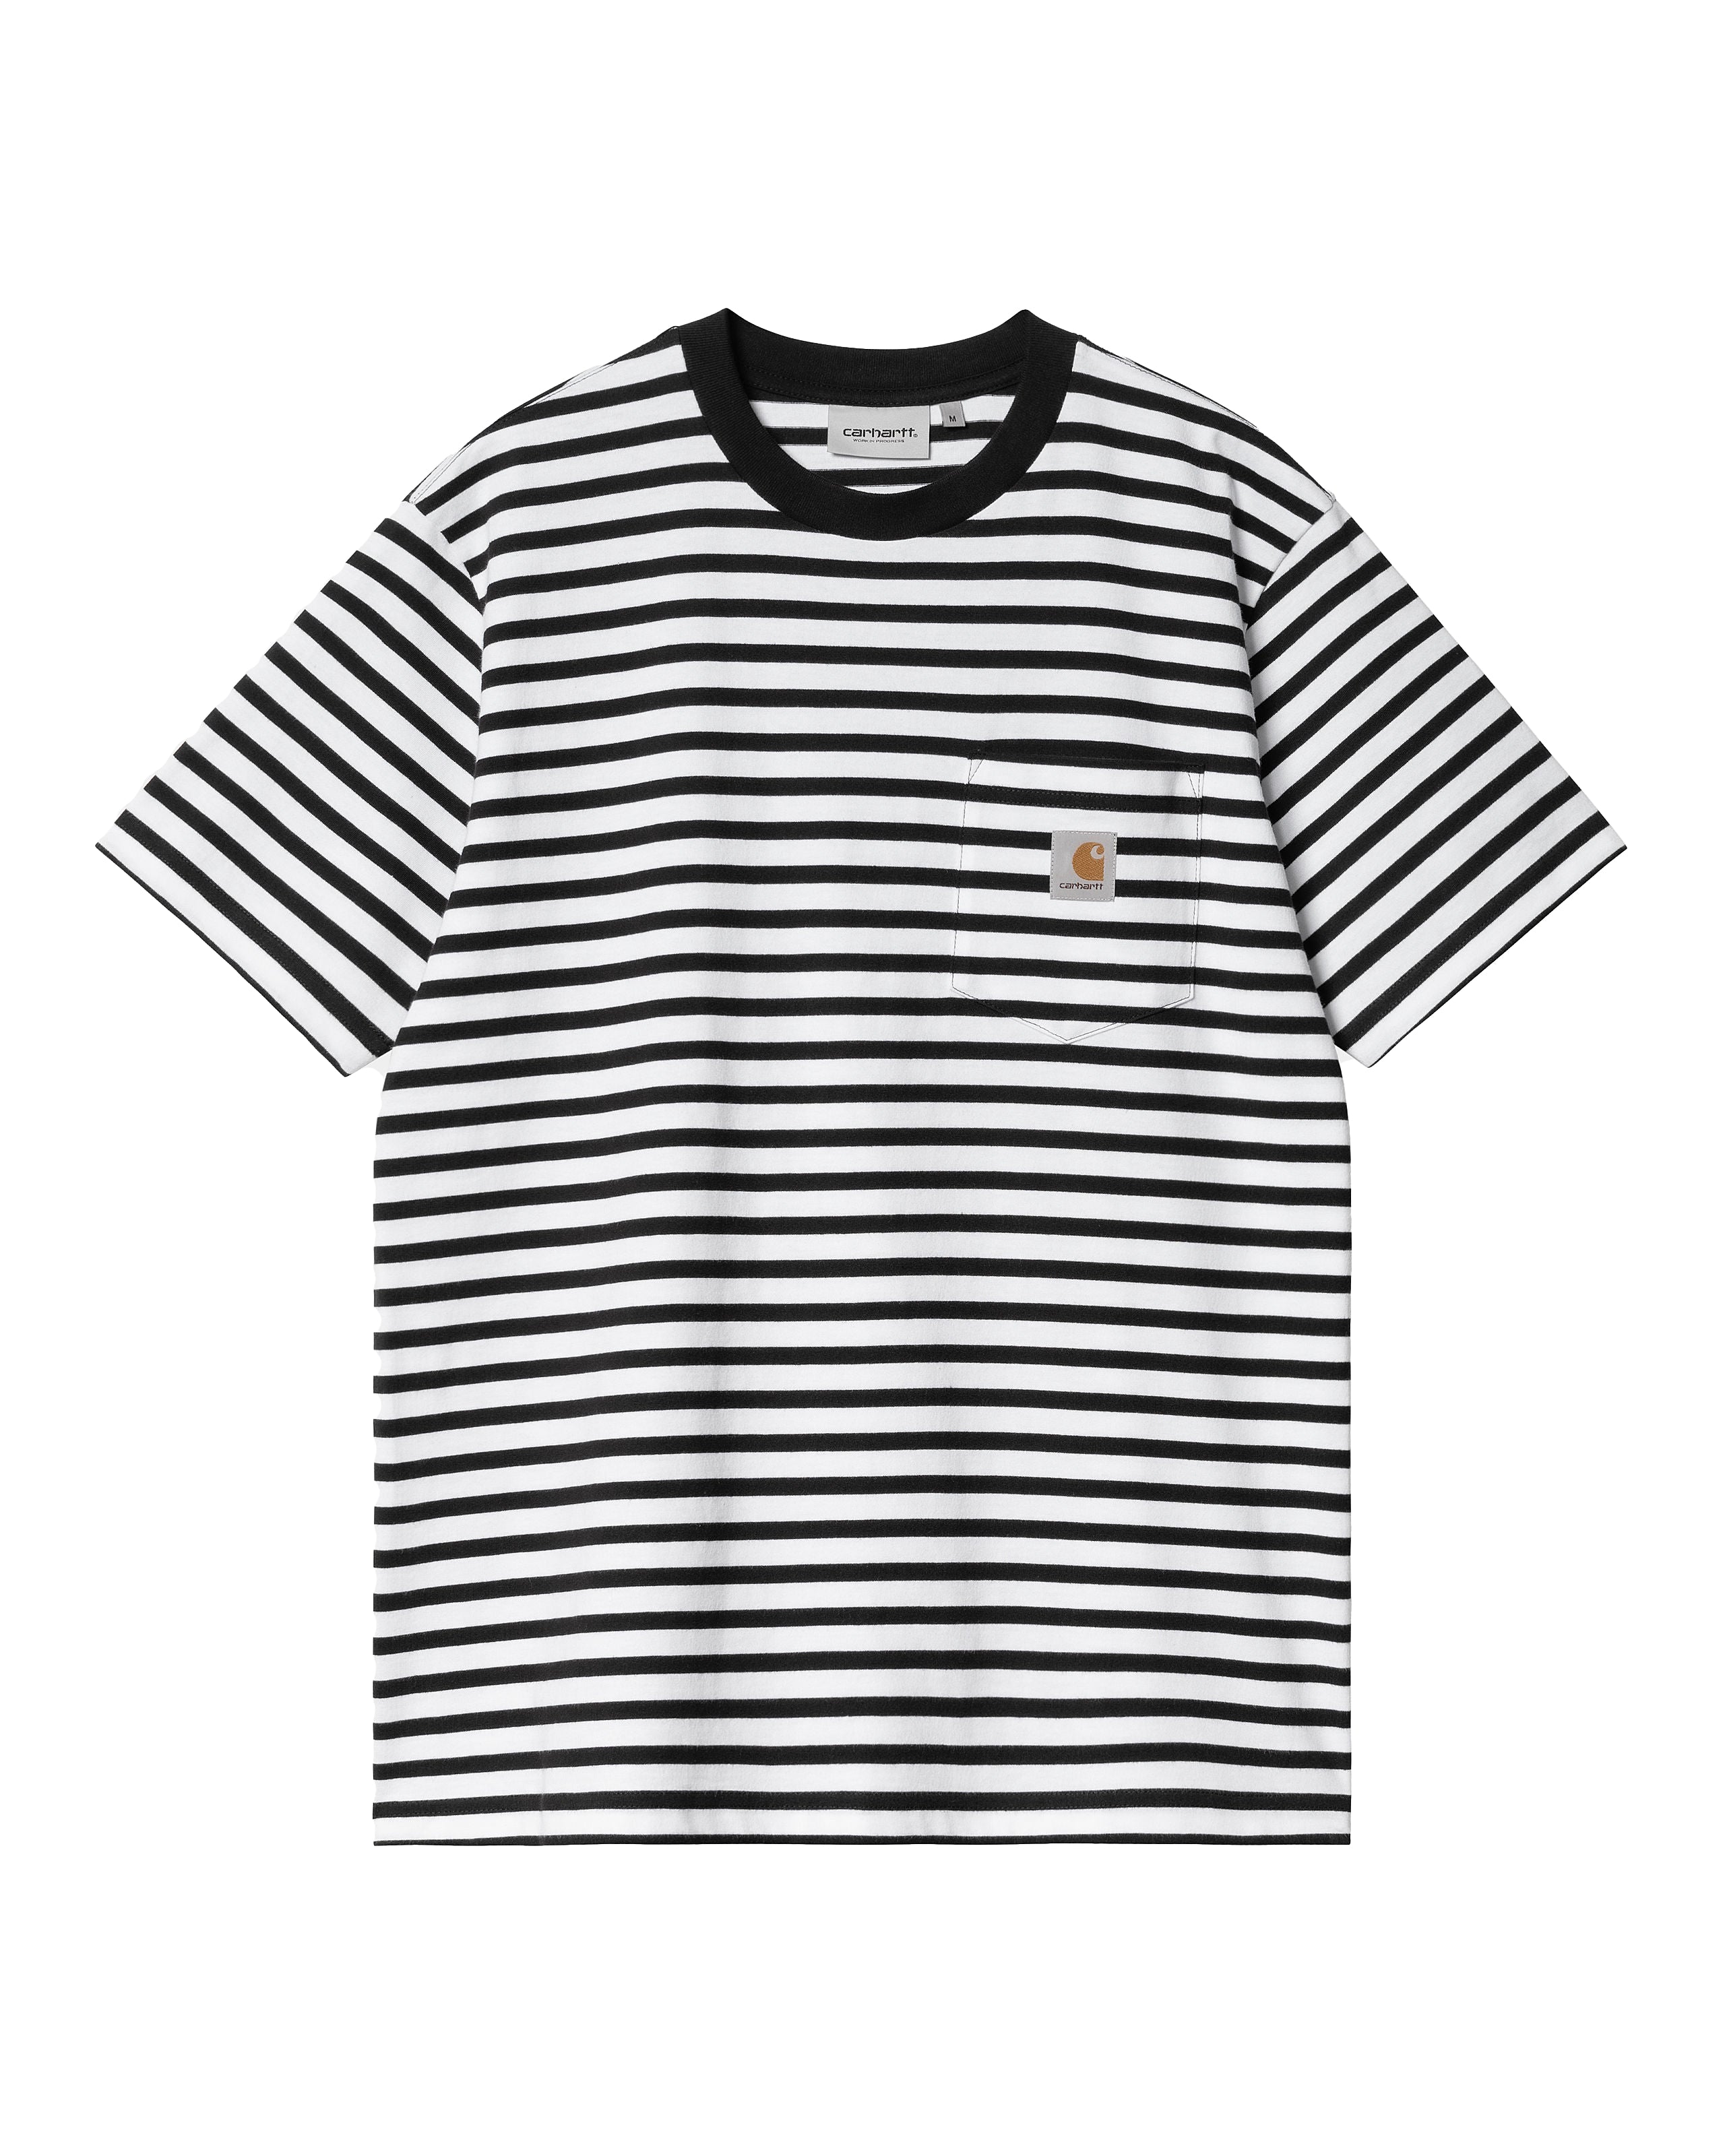 Camiseta SS Seidler Pocket - Stripe Black/White